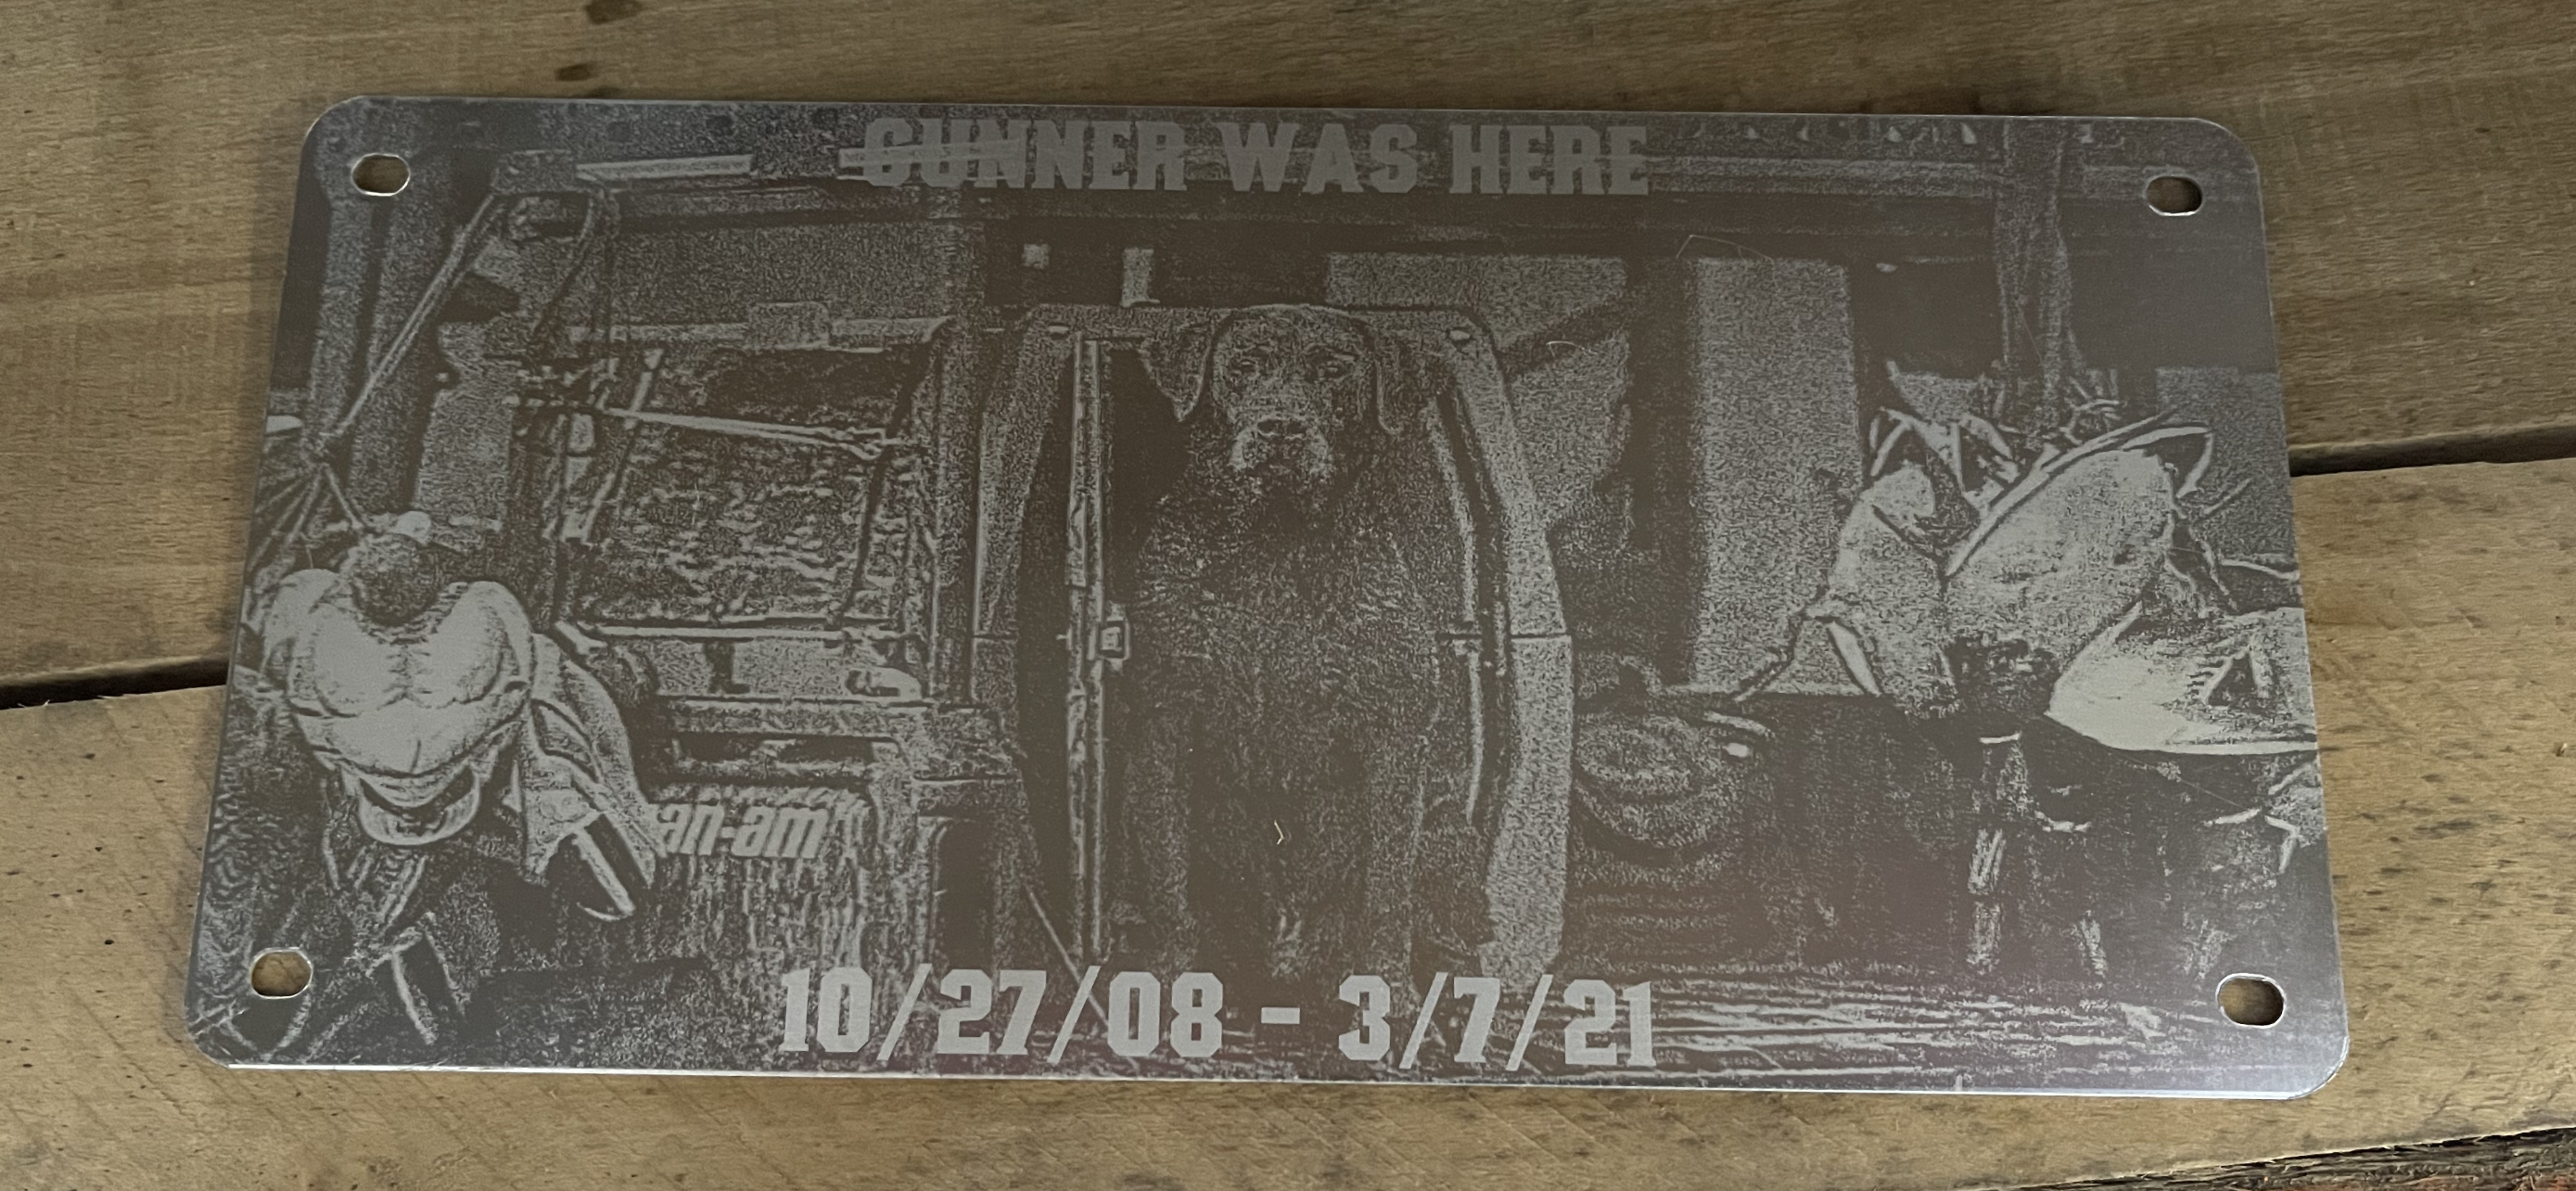 Gunner Can-am plaque.